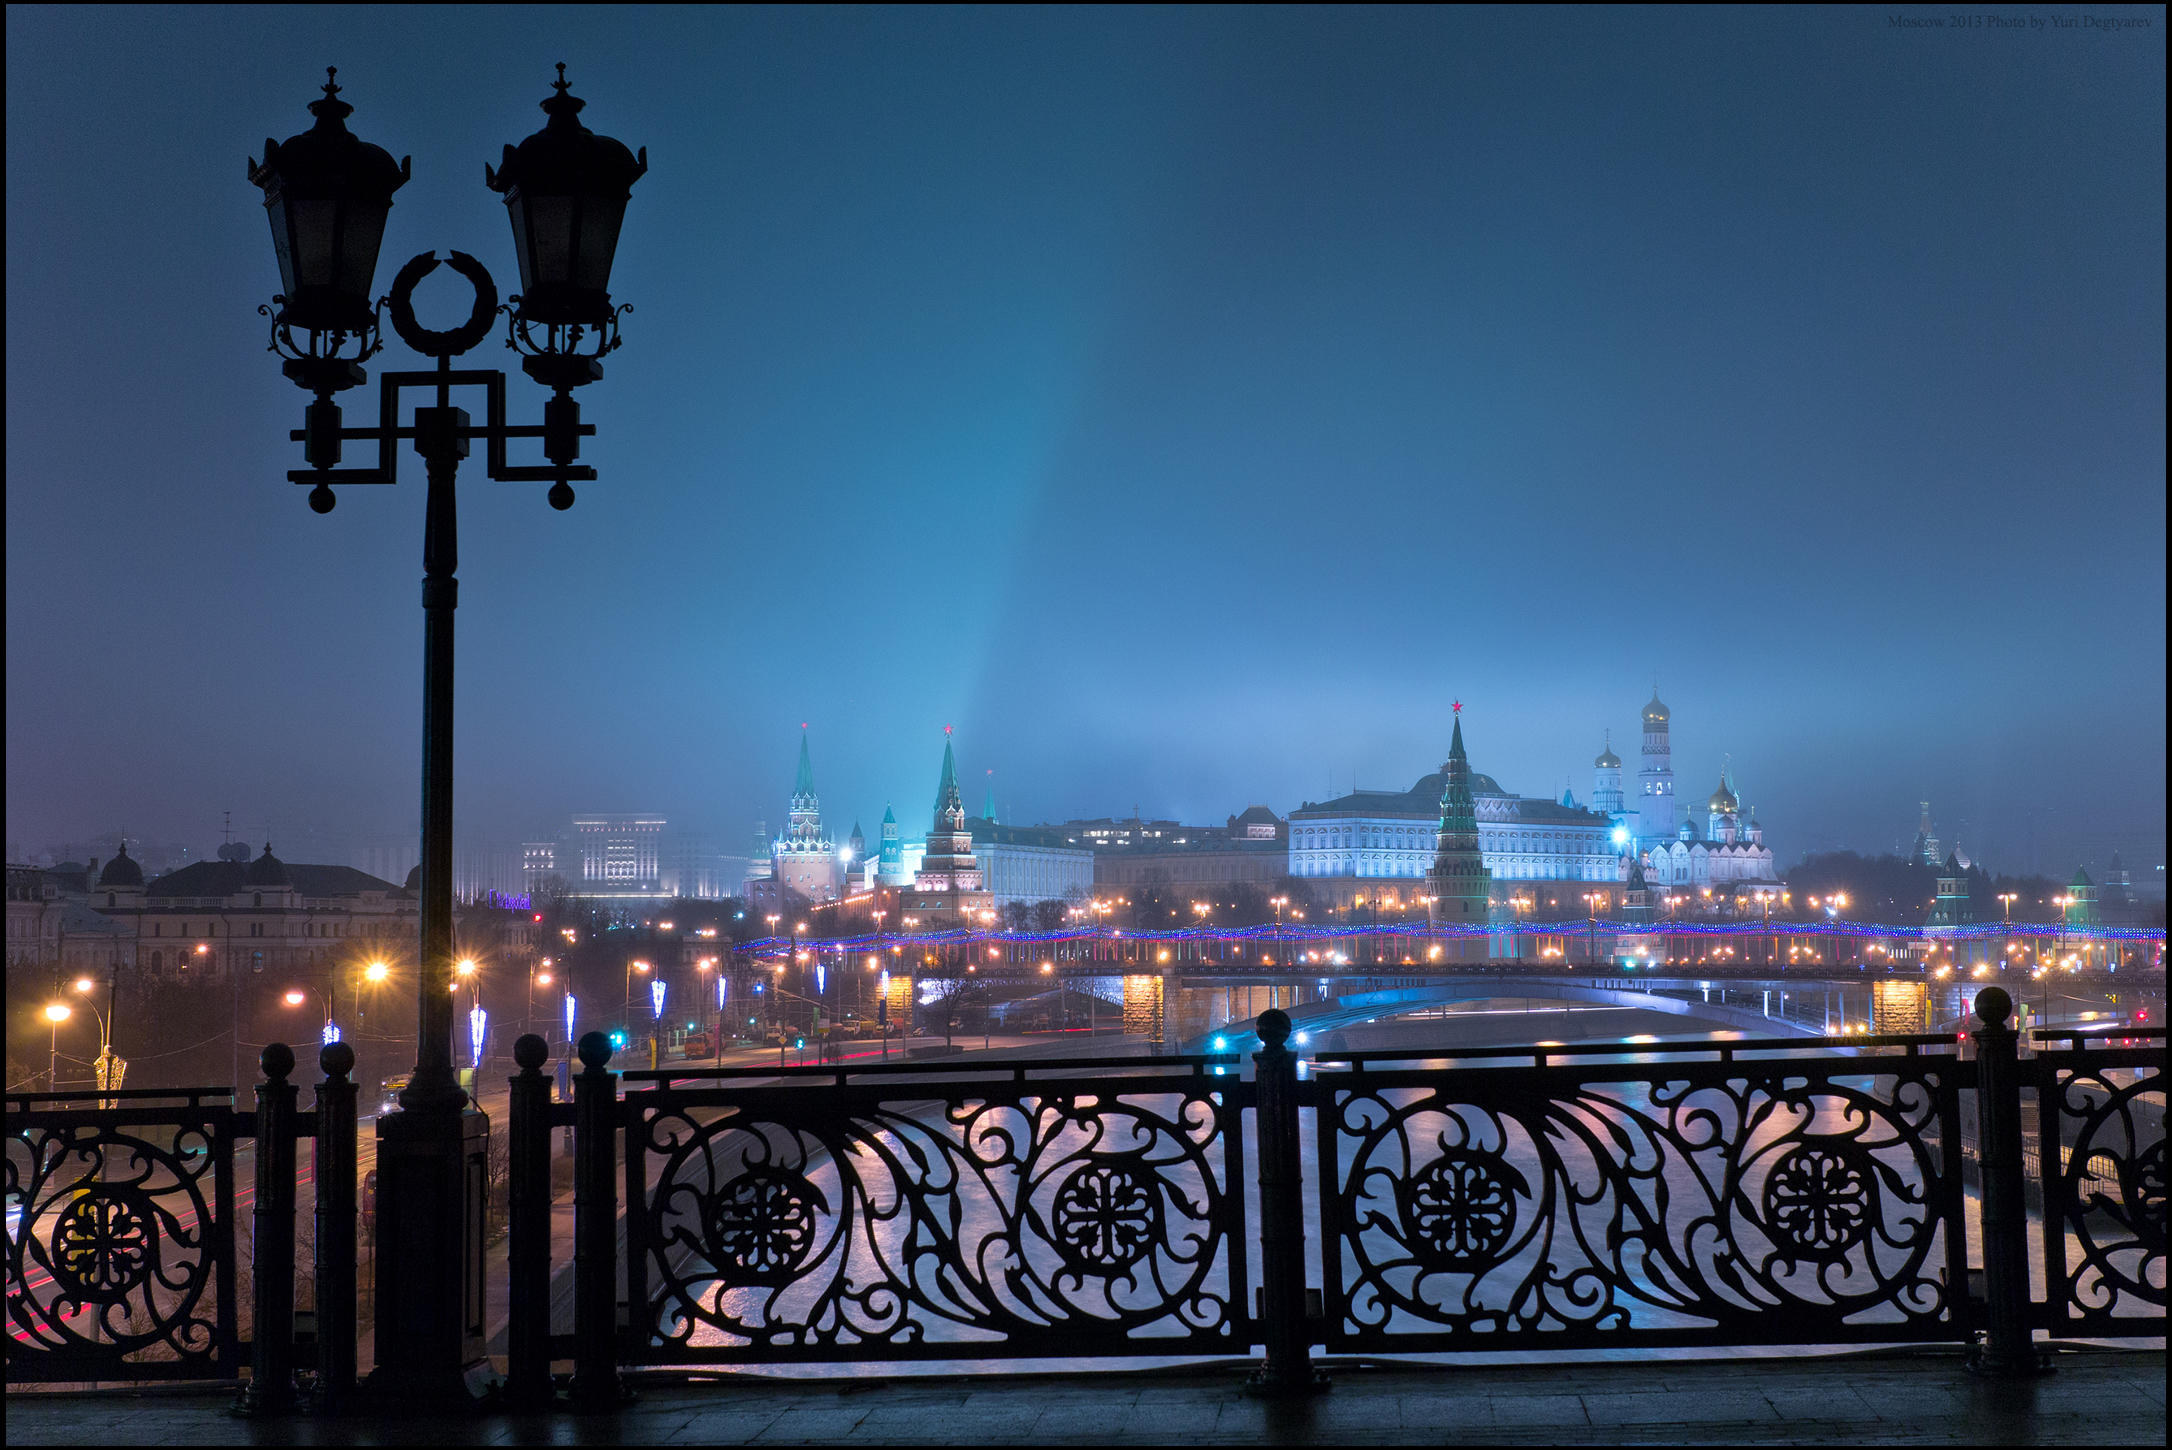 Вечер 10 4 24. Вид на Кремль с Патриаршего моста. Вид с моста ночью. Фонари на Патриаршем мосту. Вечерние фонари.